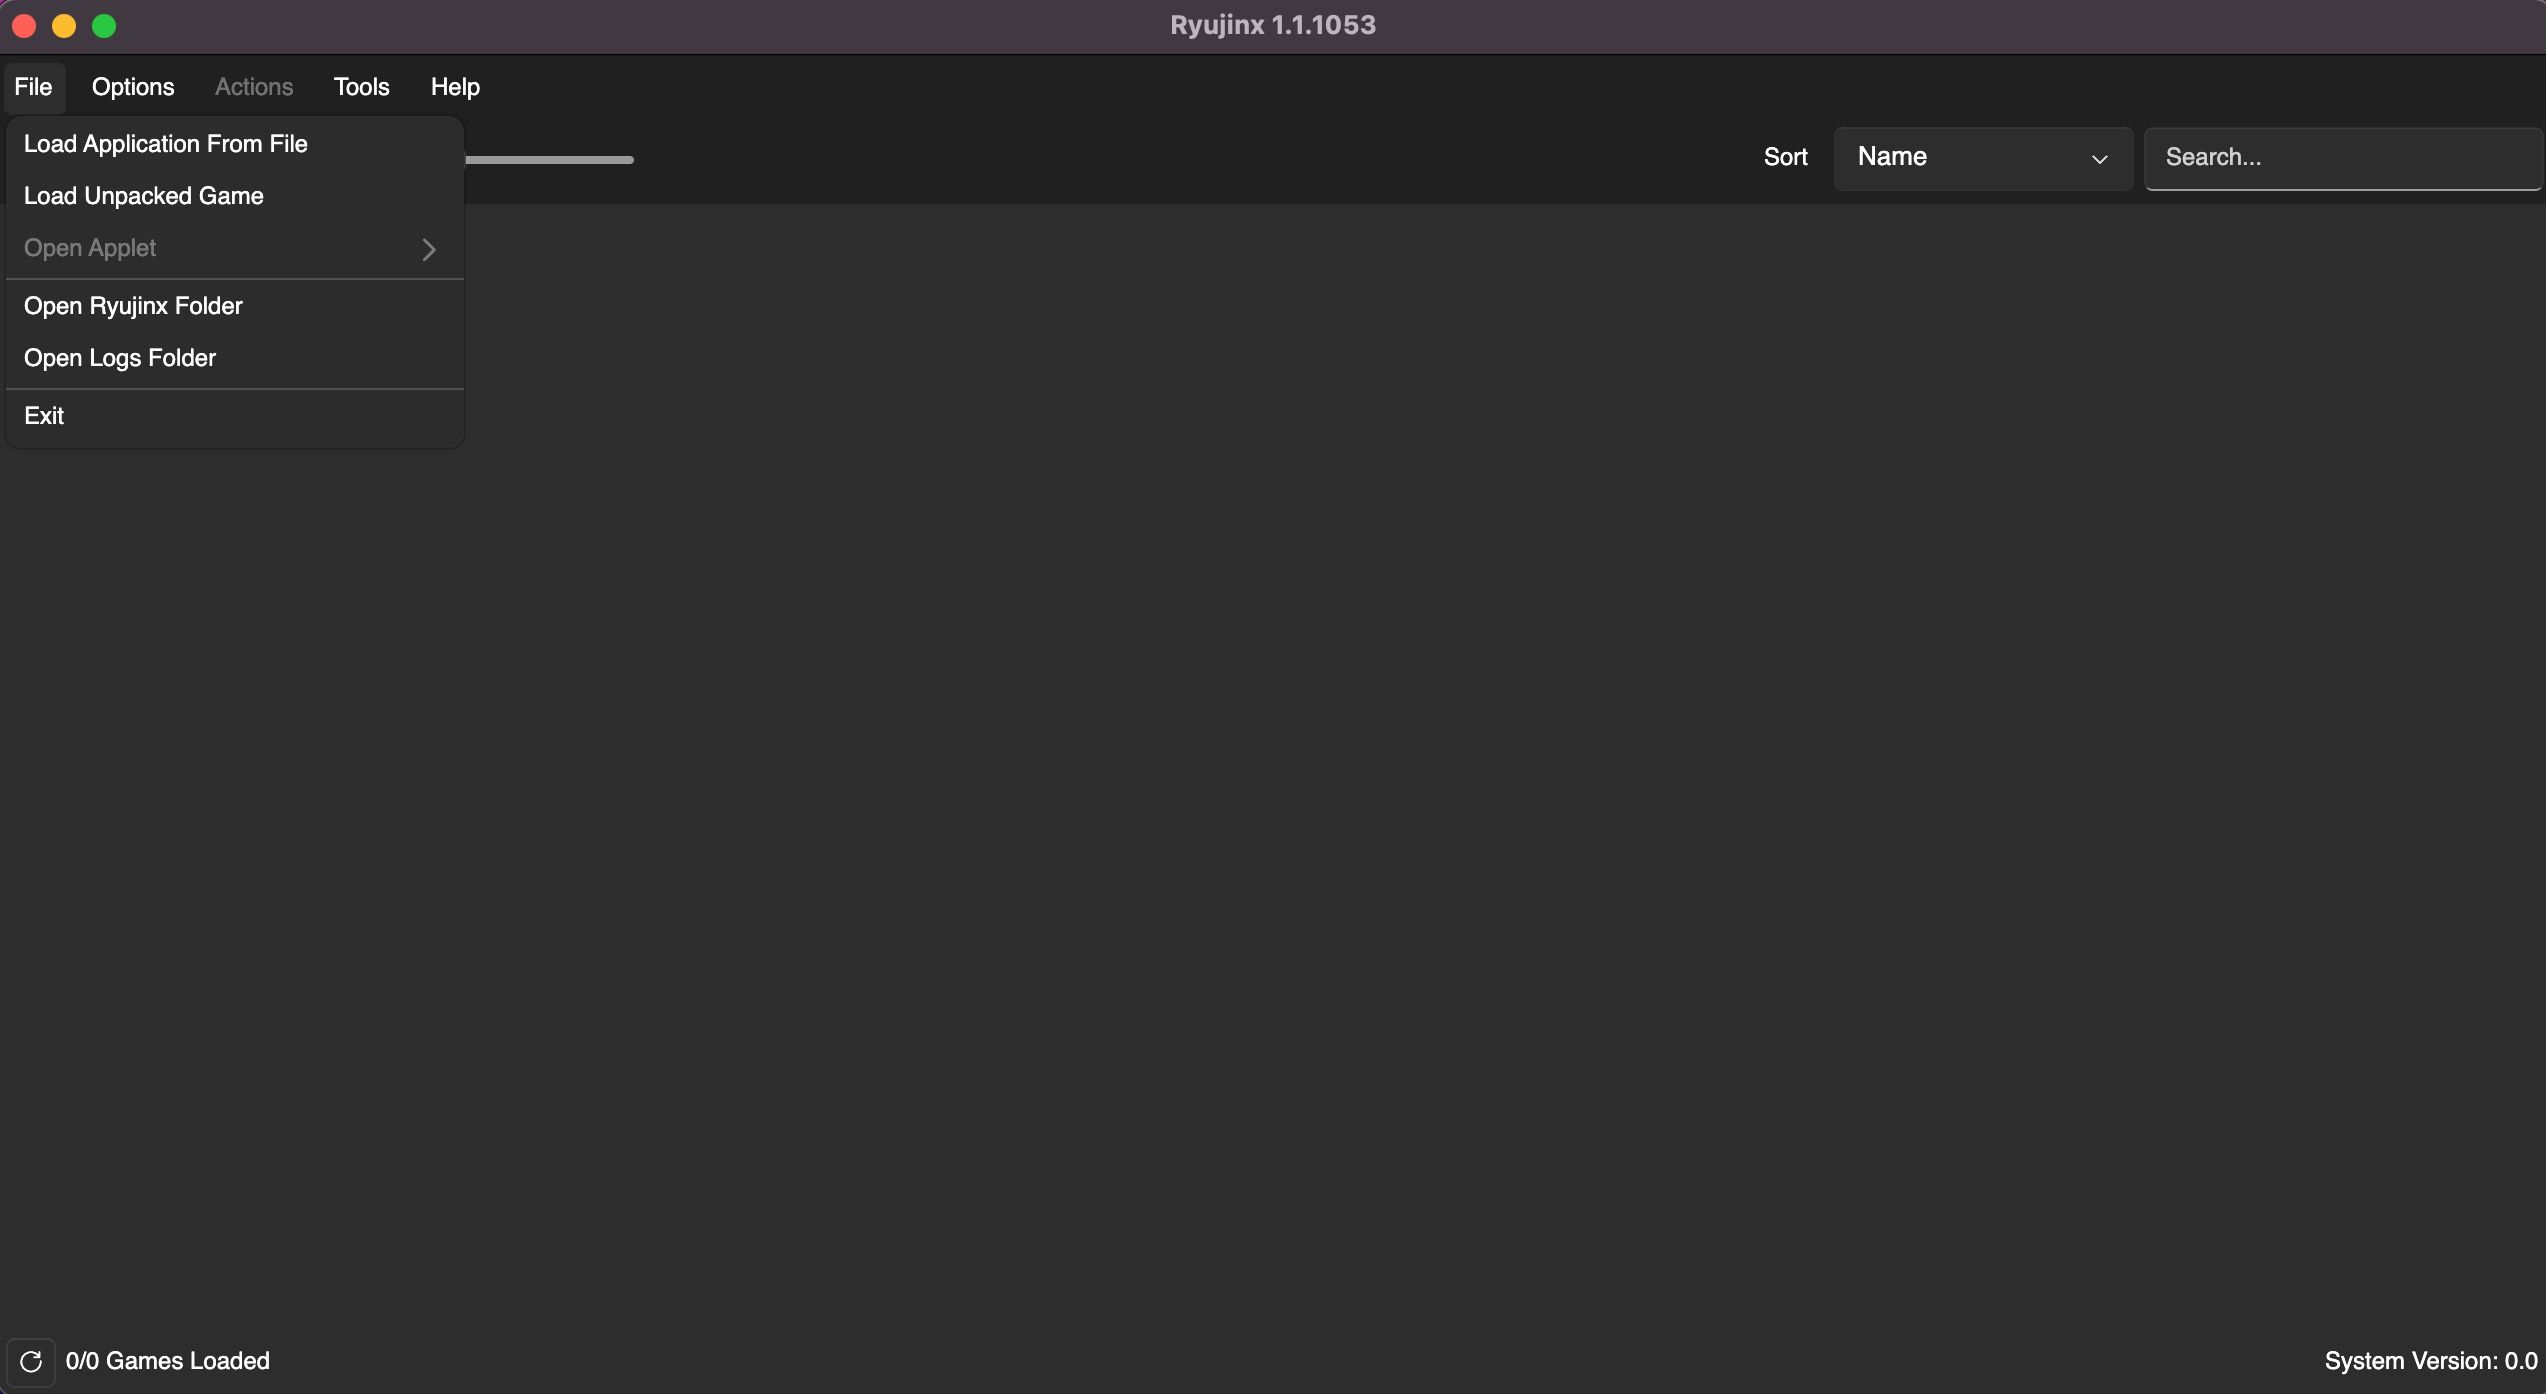 Началната страница на Ryujinx macOS е отворена с опции за конфигуриране на Ryujinx